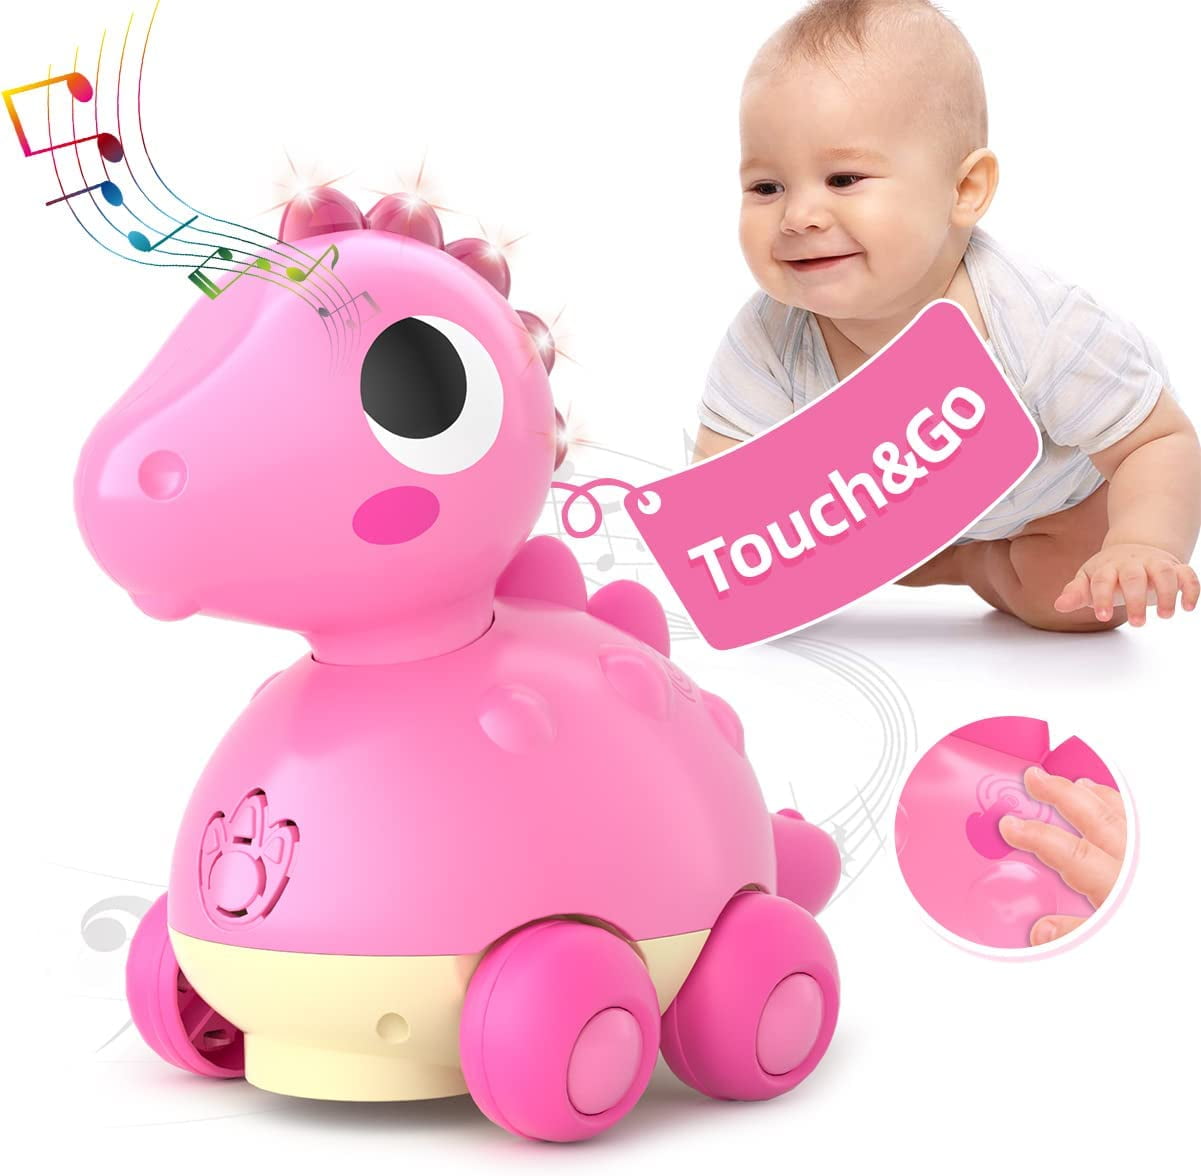 Jouets pour bébé 6 à 12 mois Touch & Go Musique Light Baby